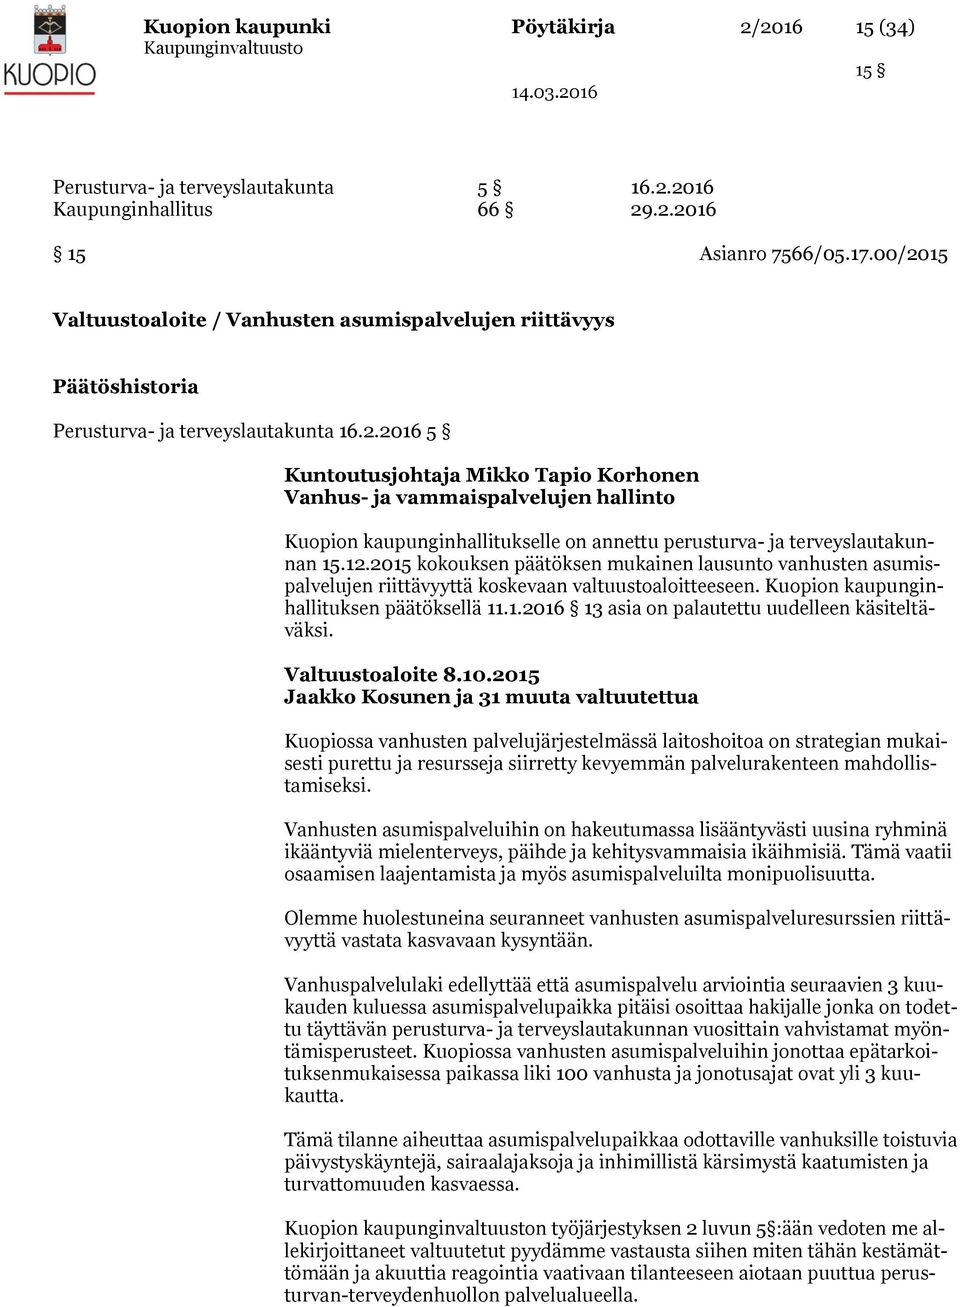 12.2015 kokouksen päätöksen mukainen lausunto vanhusten asumispalvelujen riittävyyttä koskevaan valtuustoaloitteeseen. Kuopion kaupunginhallituksen päätöksellä 11.1.2016 13 asia on palautettu uudelleen käsiteltäväksi.